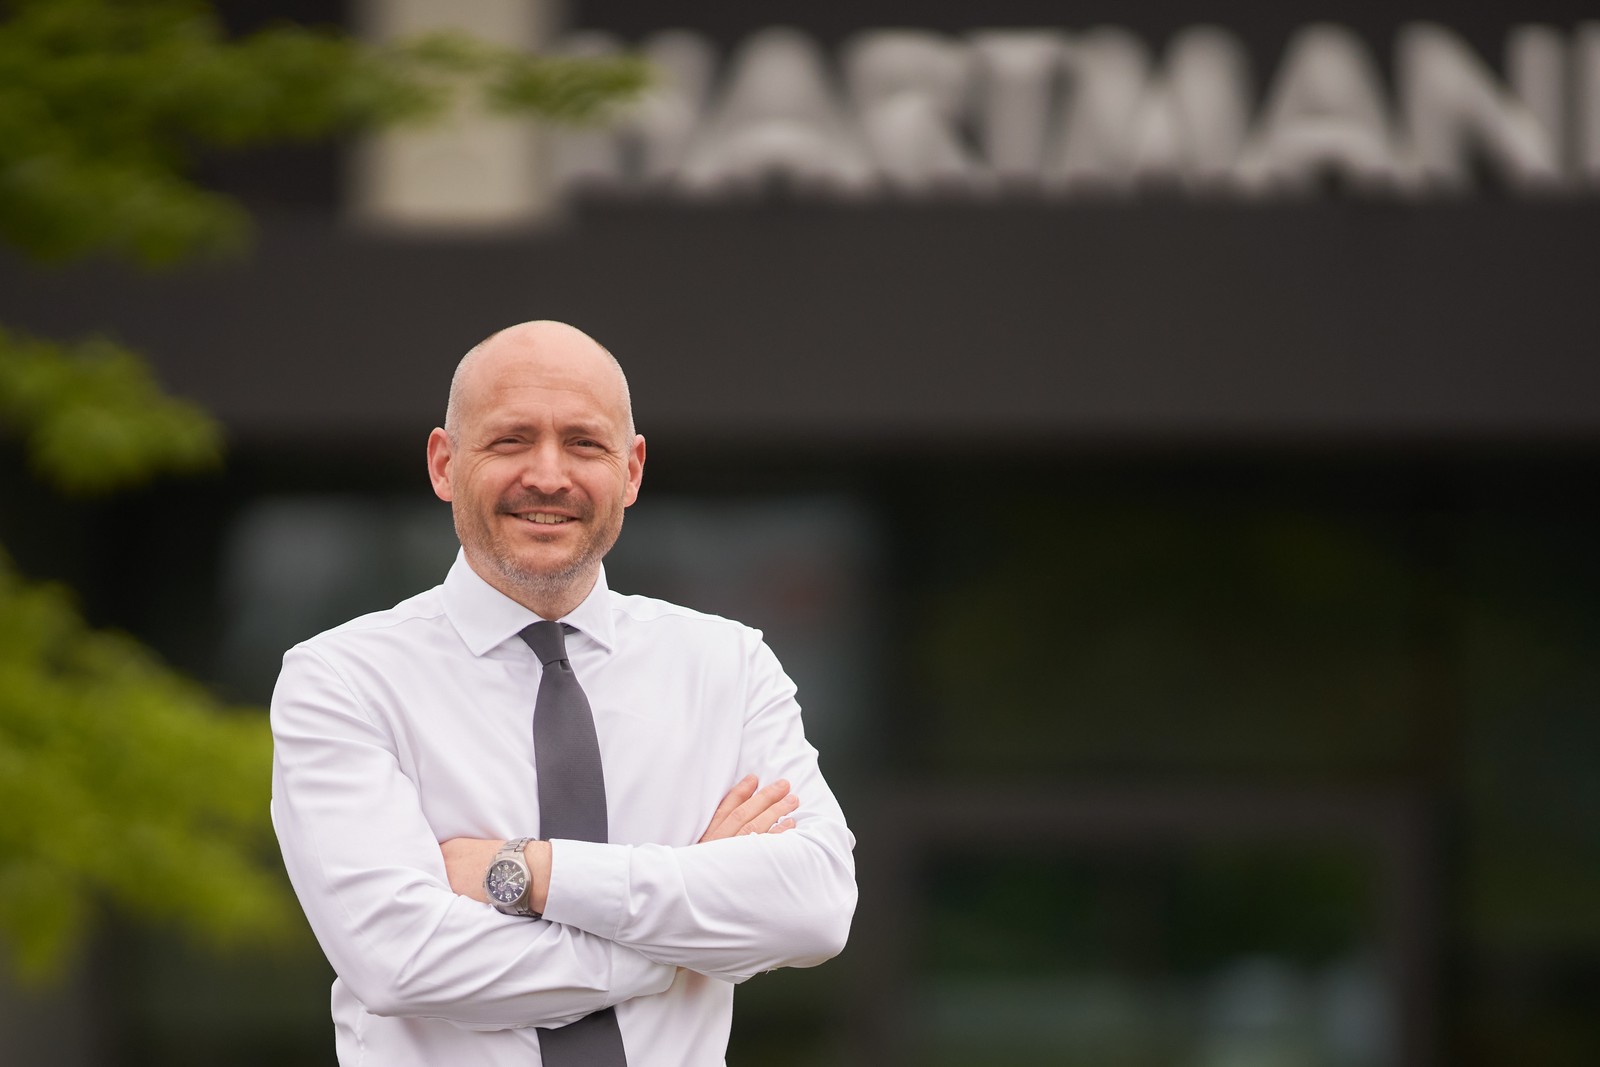 Seit dem 1. Juni 2020 verantwortet Olaf Engler als Vertriebsleiter das Geschäft für Privatkunden in Deutschland bei Hartmann Tresore.